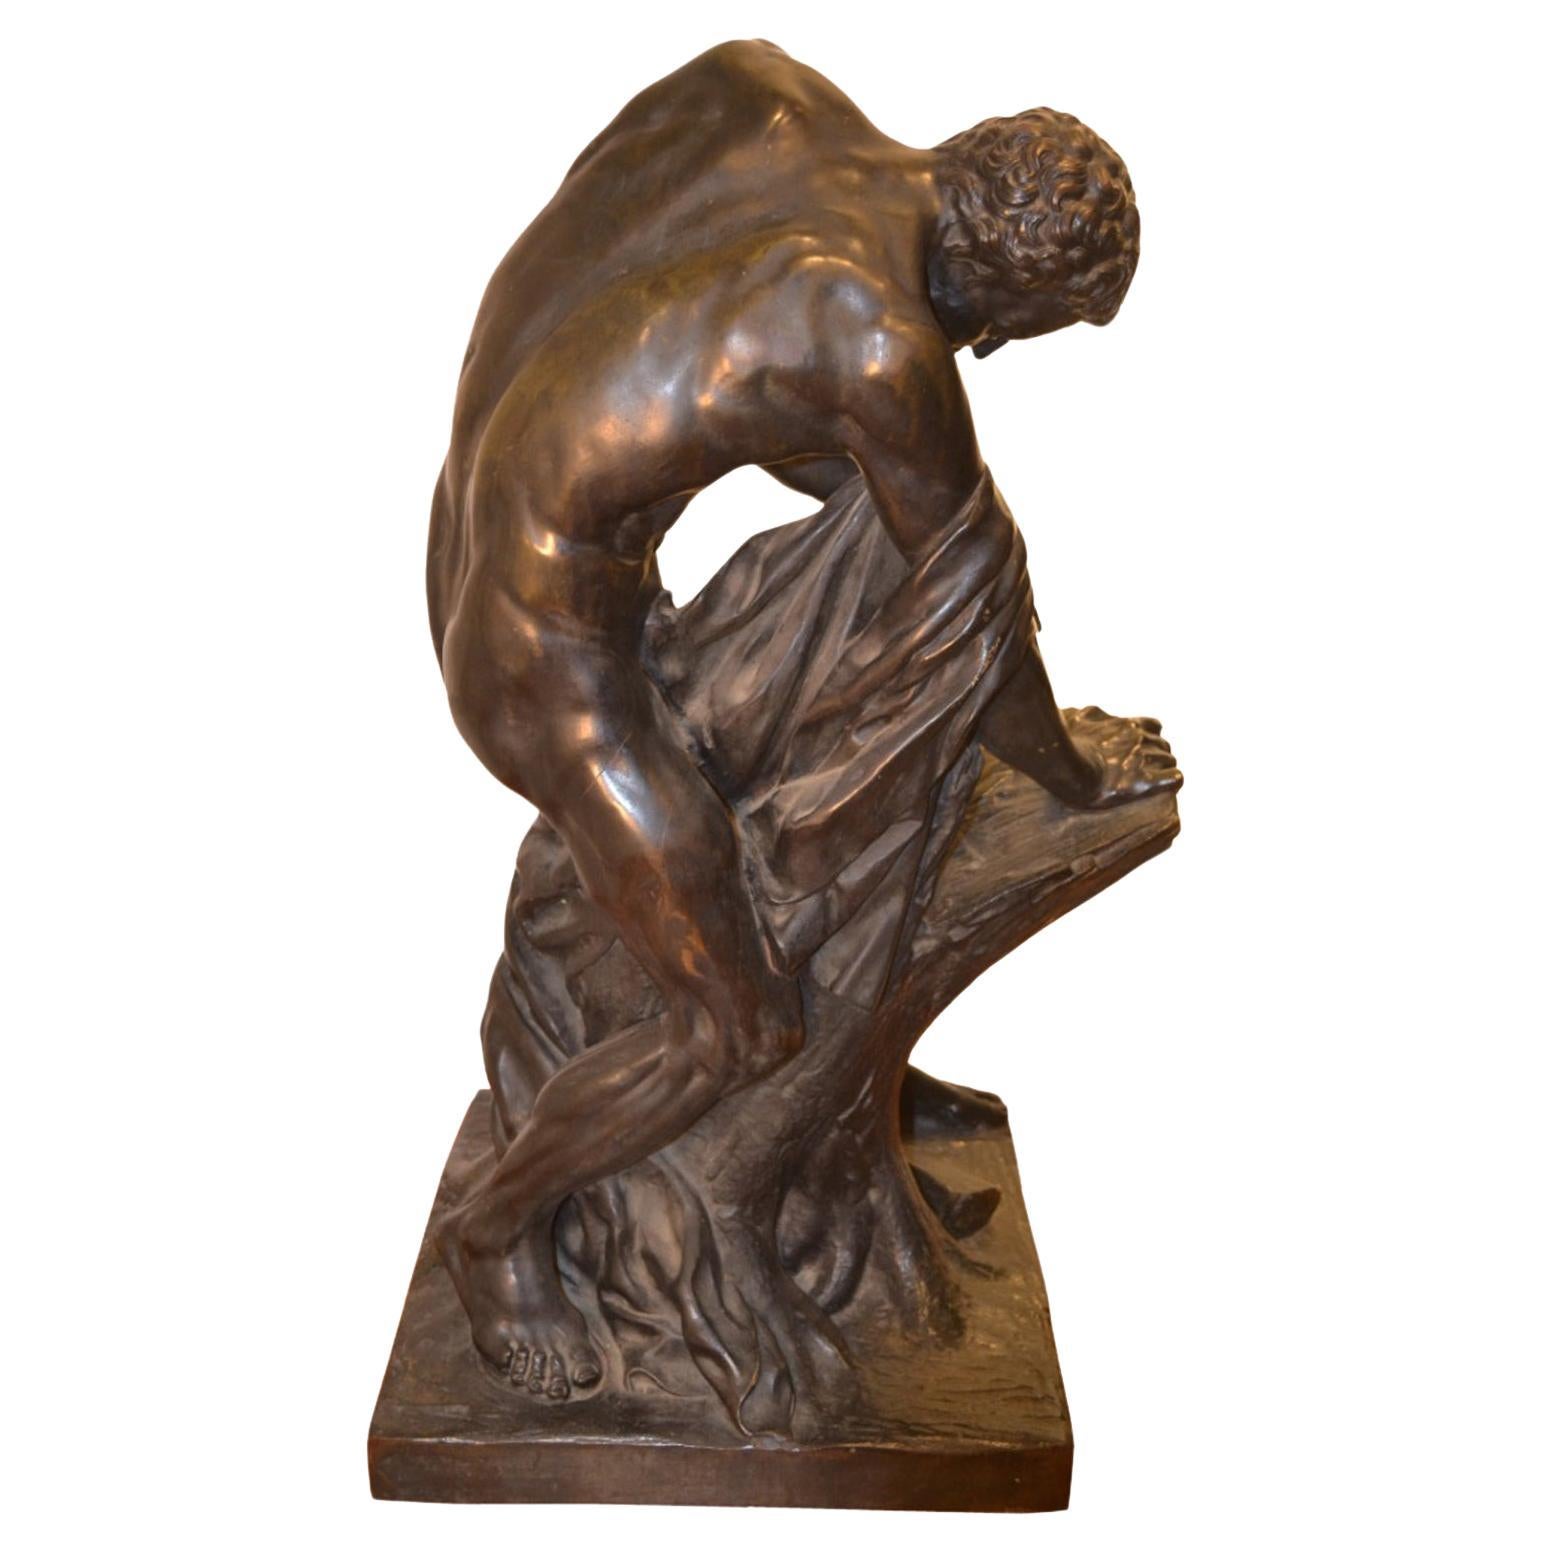 Bronzestatue des römisch-griechischen Ringkämpfers Milo von Croton nach Dumont